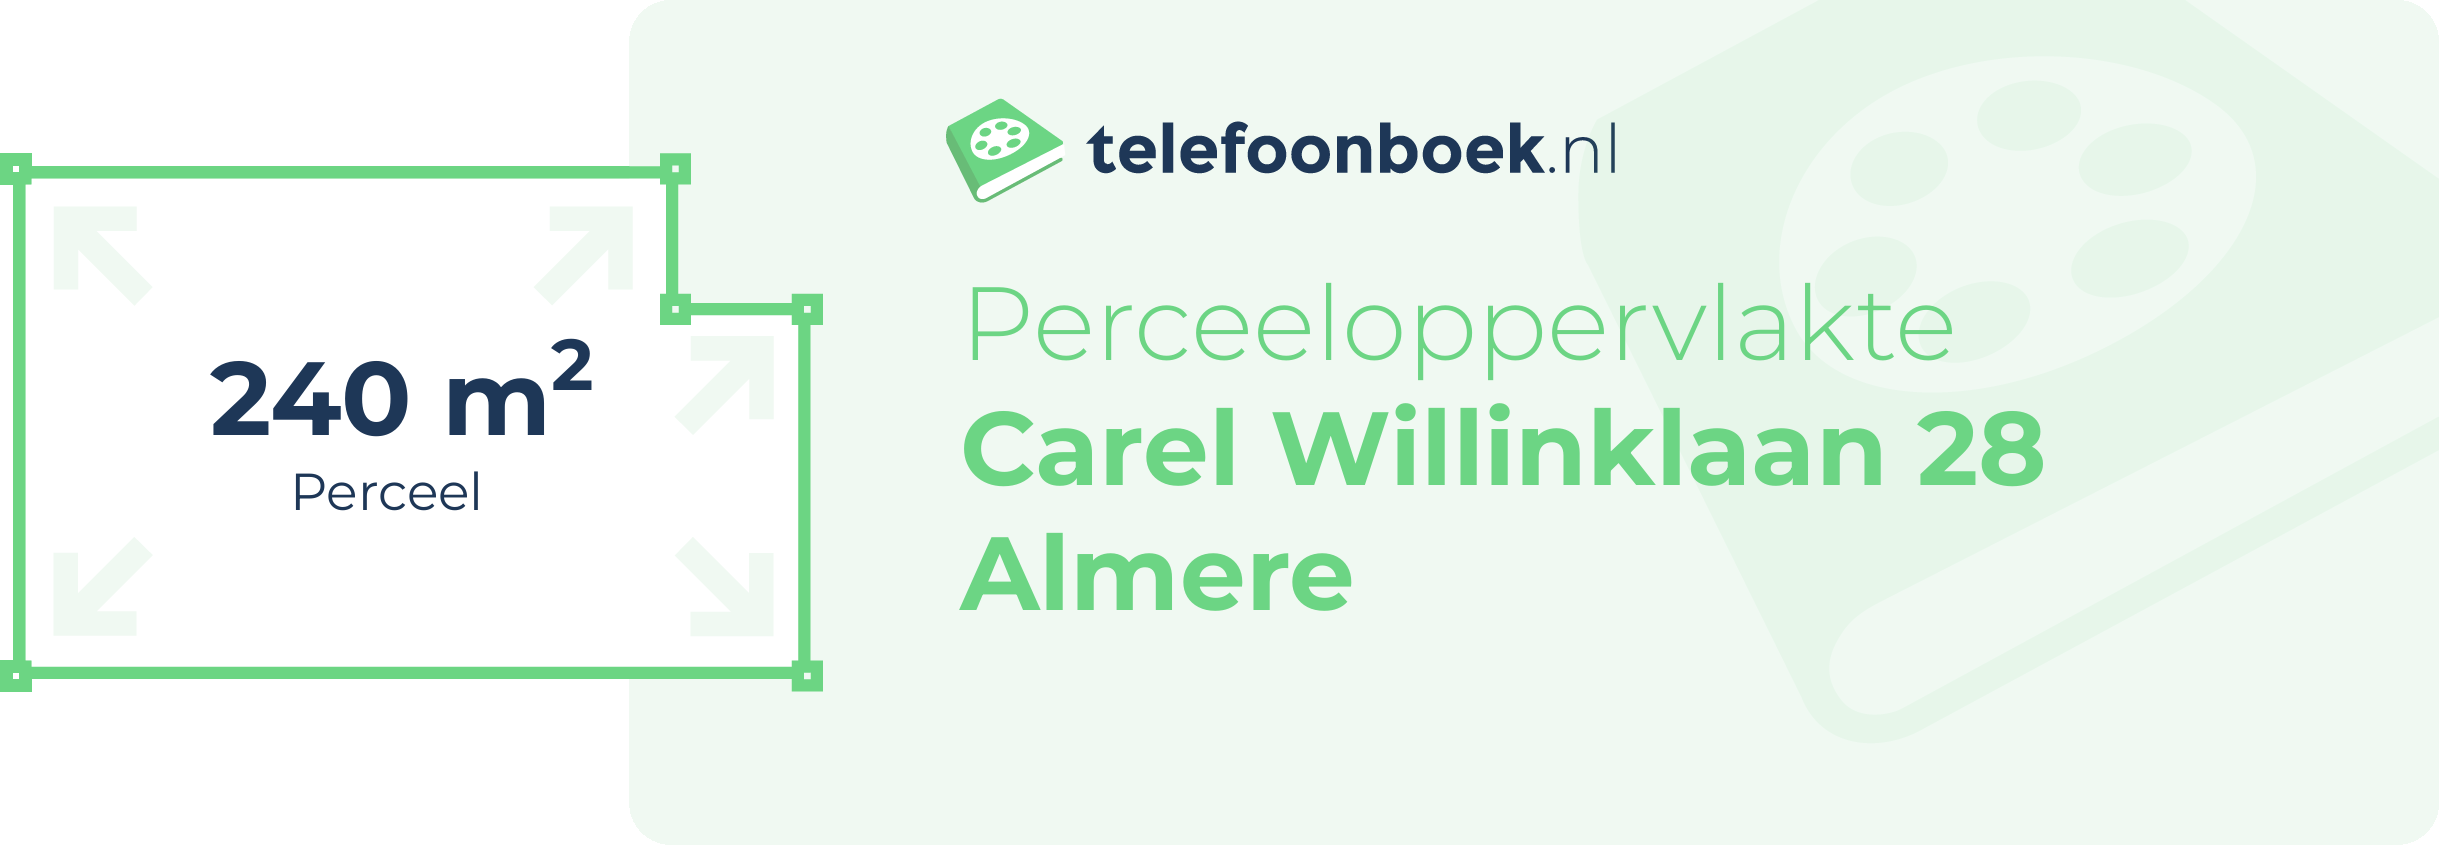 Perceeloppervlakte Carel Willinklaan 28 Almere